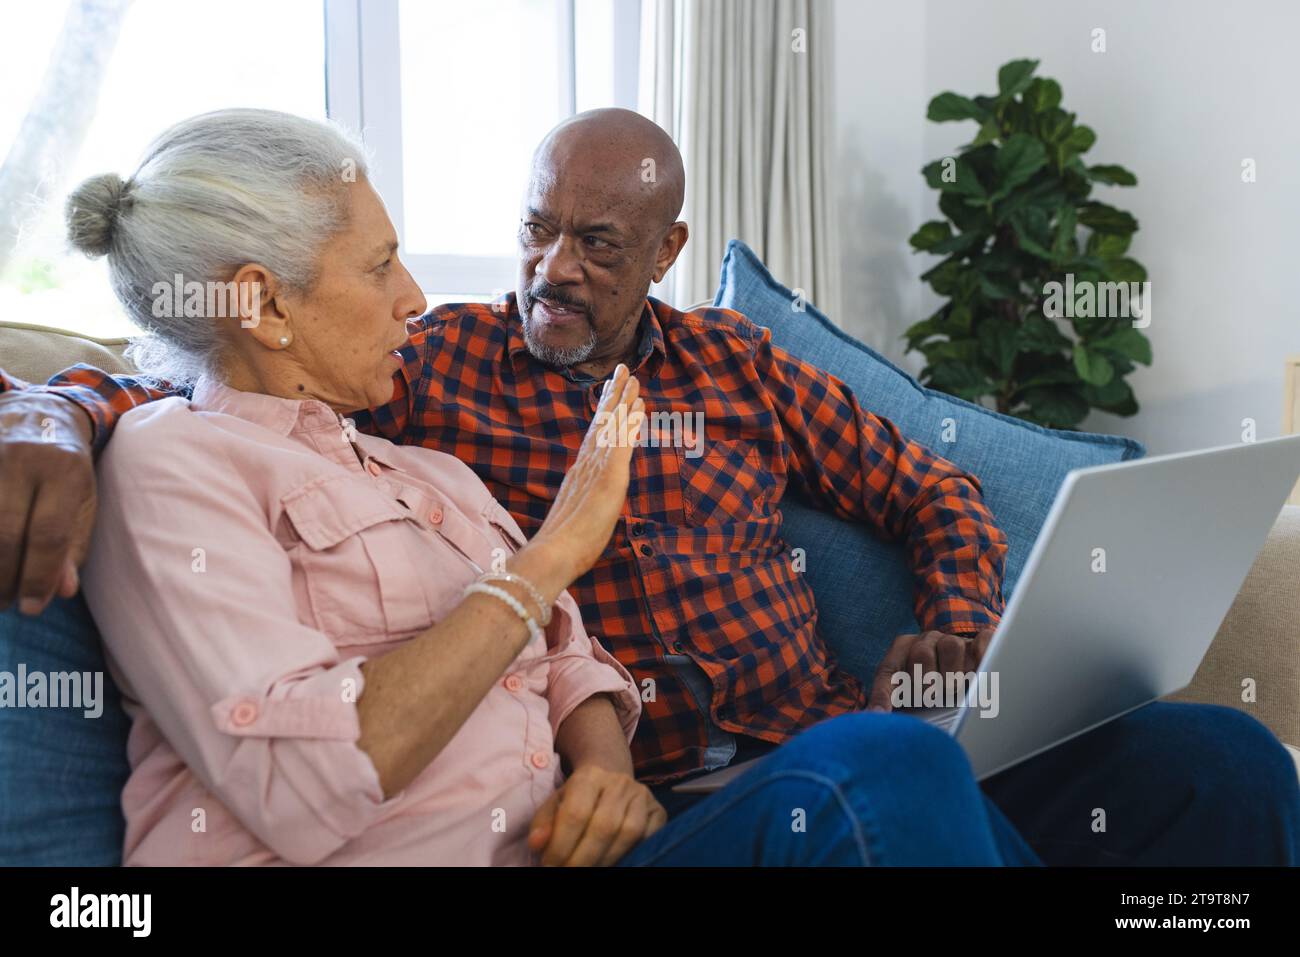 Vielseitiges Seniorenpaar, das auf dem Sofa sitzt und im sonnigen Wohnzimmer einen Laptop nutzt. Lebensstil, Ruhestand, Seniorenleben, Zweisamkeit, Kommunik Stockfoto